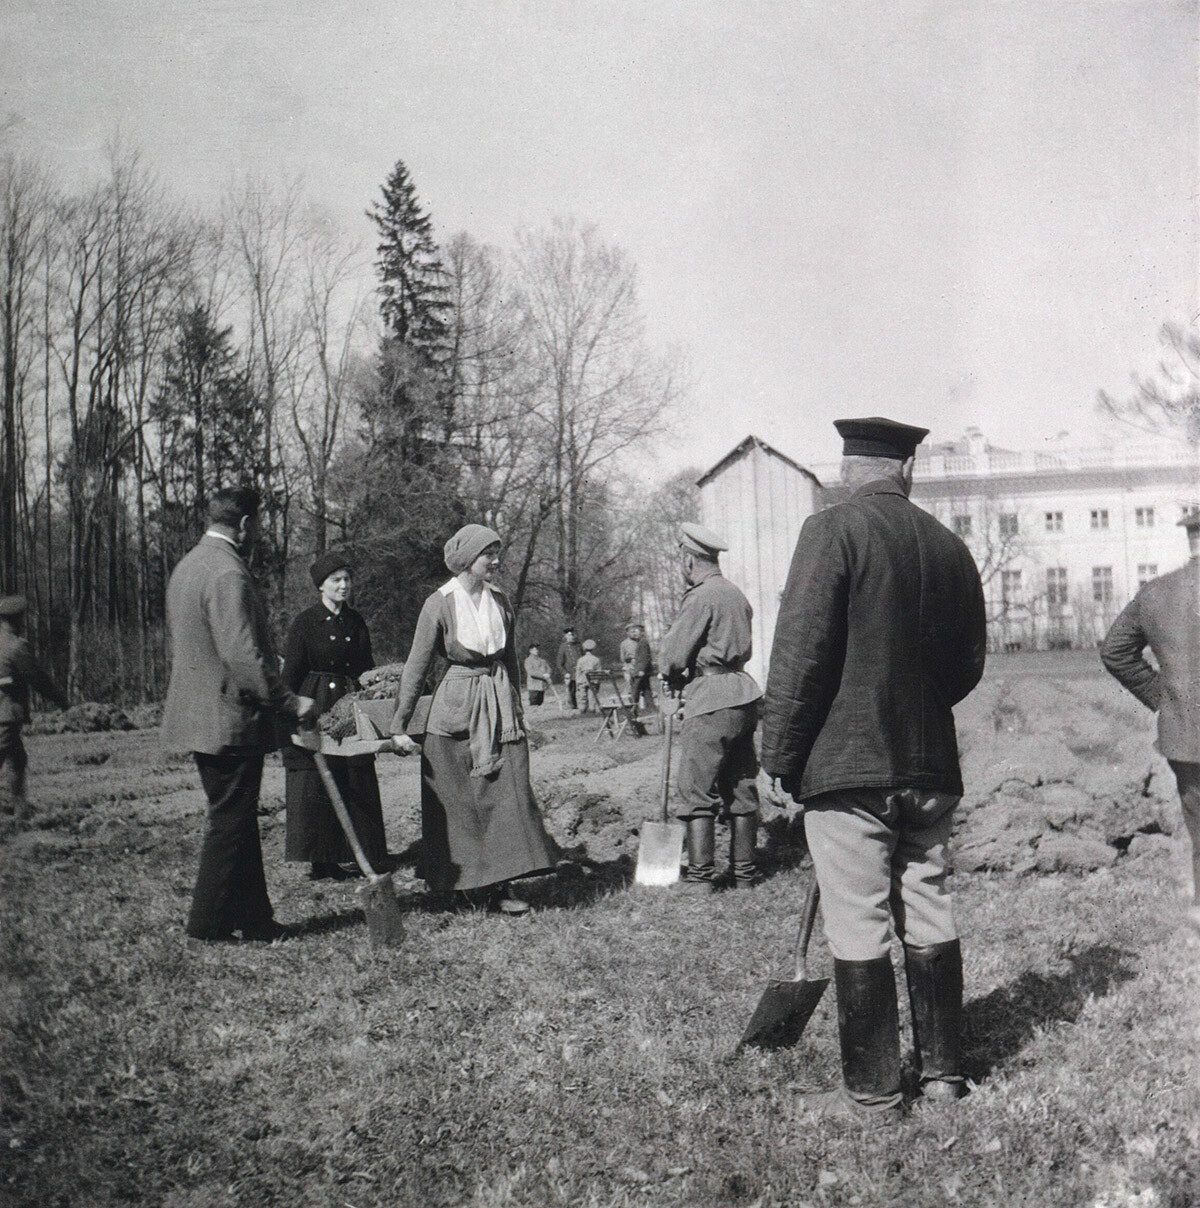 La famiglia reale lavora negli orti di Tsarskoe Selo, durante gli arresti domiciliari, nella primavera del 1917

